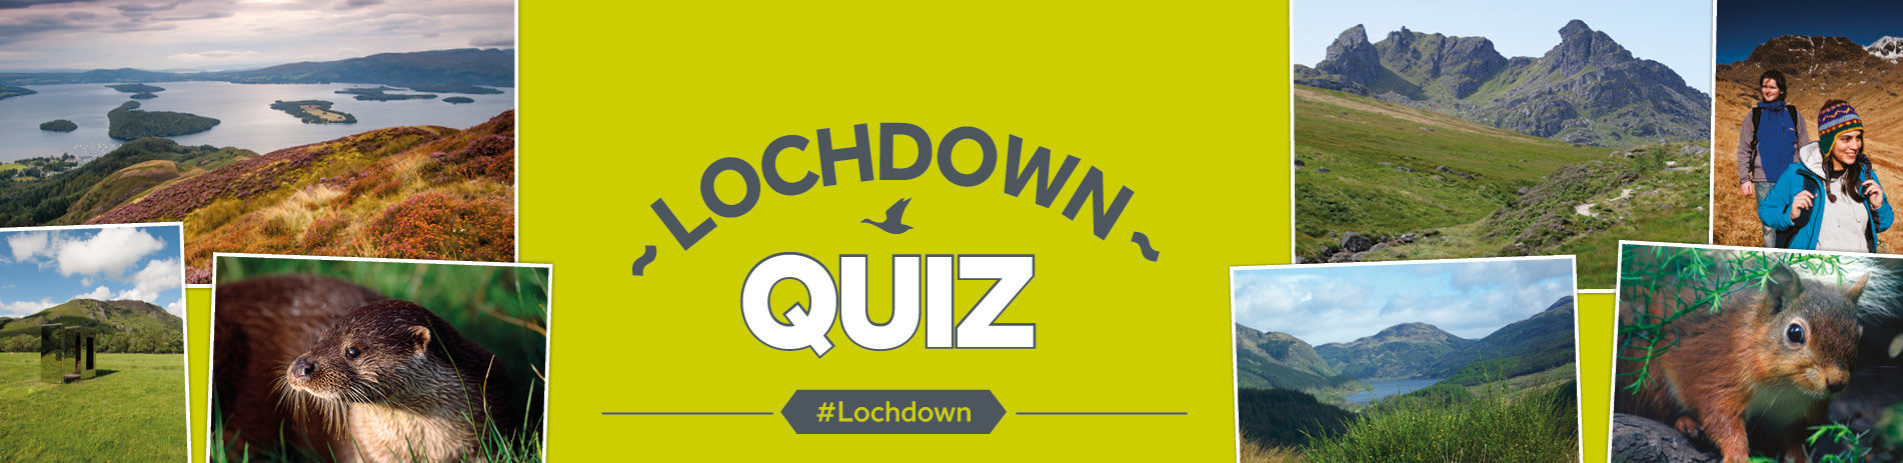 header-text-lochdown-quiz